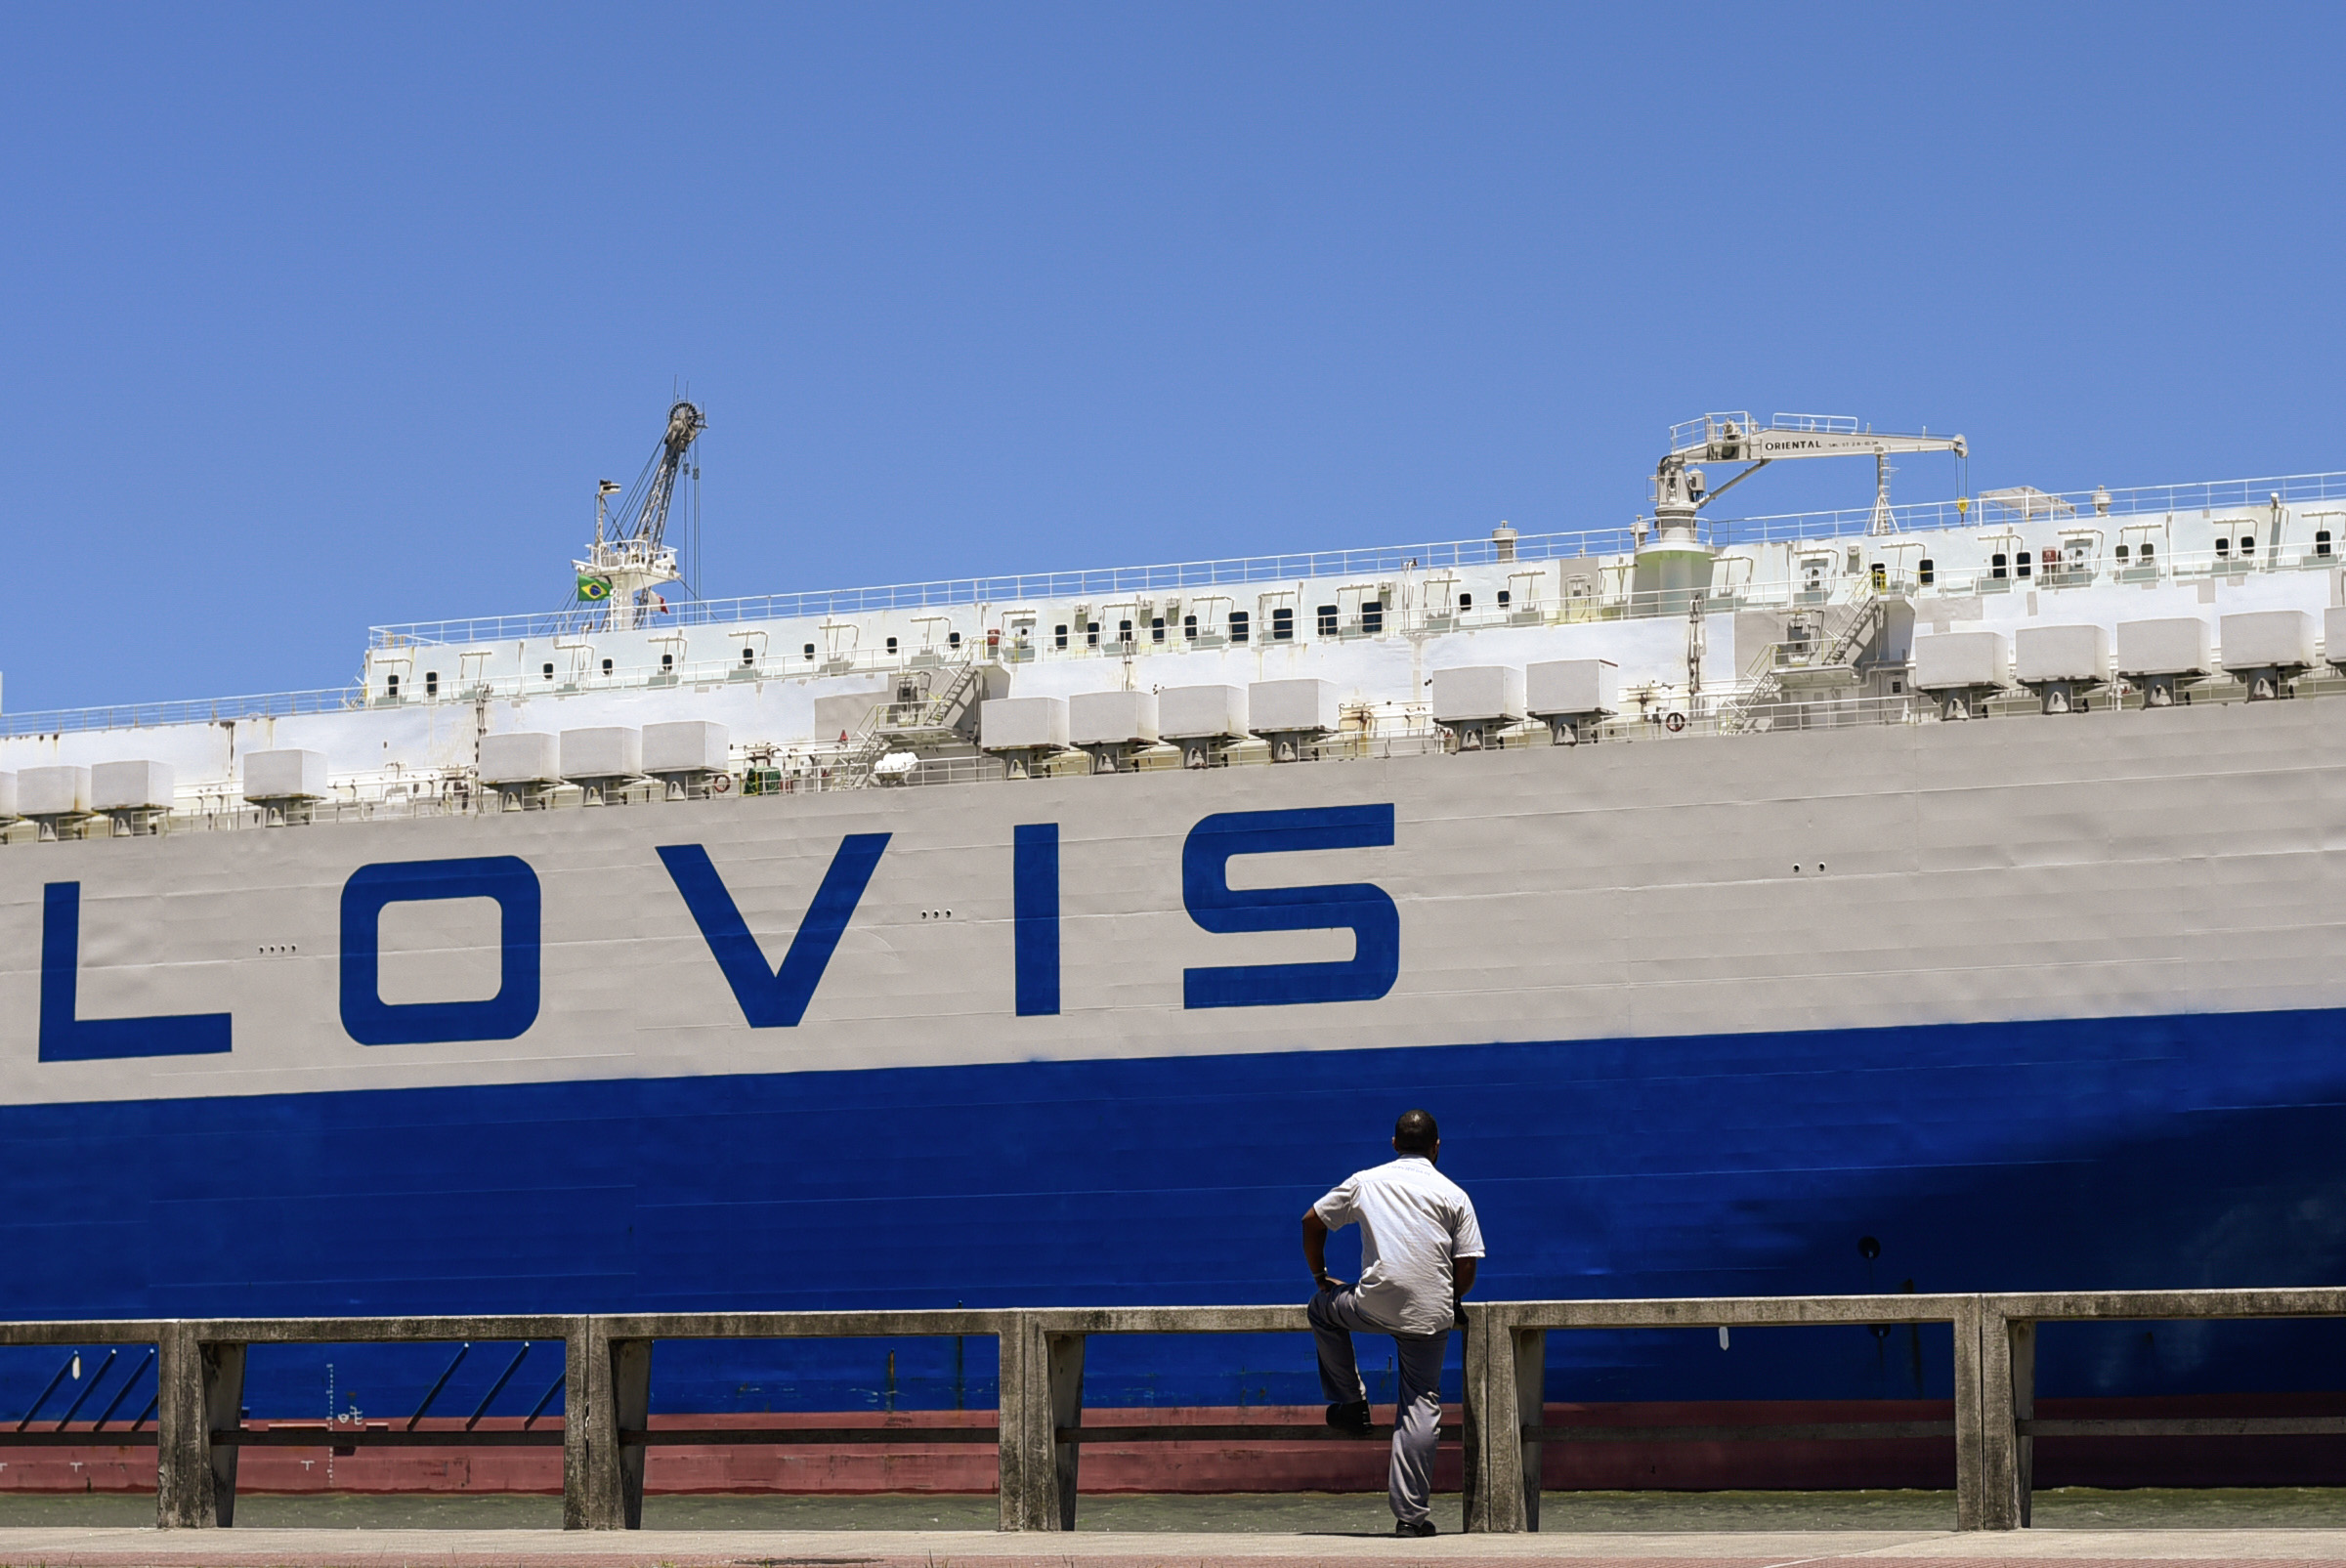 Navio Glovis, de bandeira coreana, faz manobra na baía de Vitória